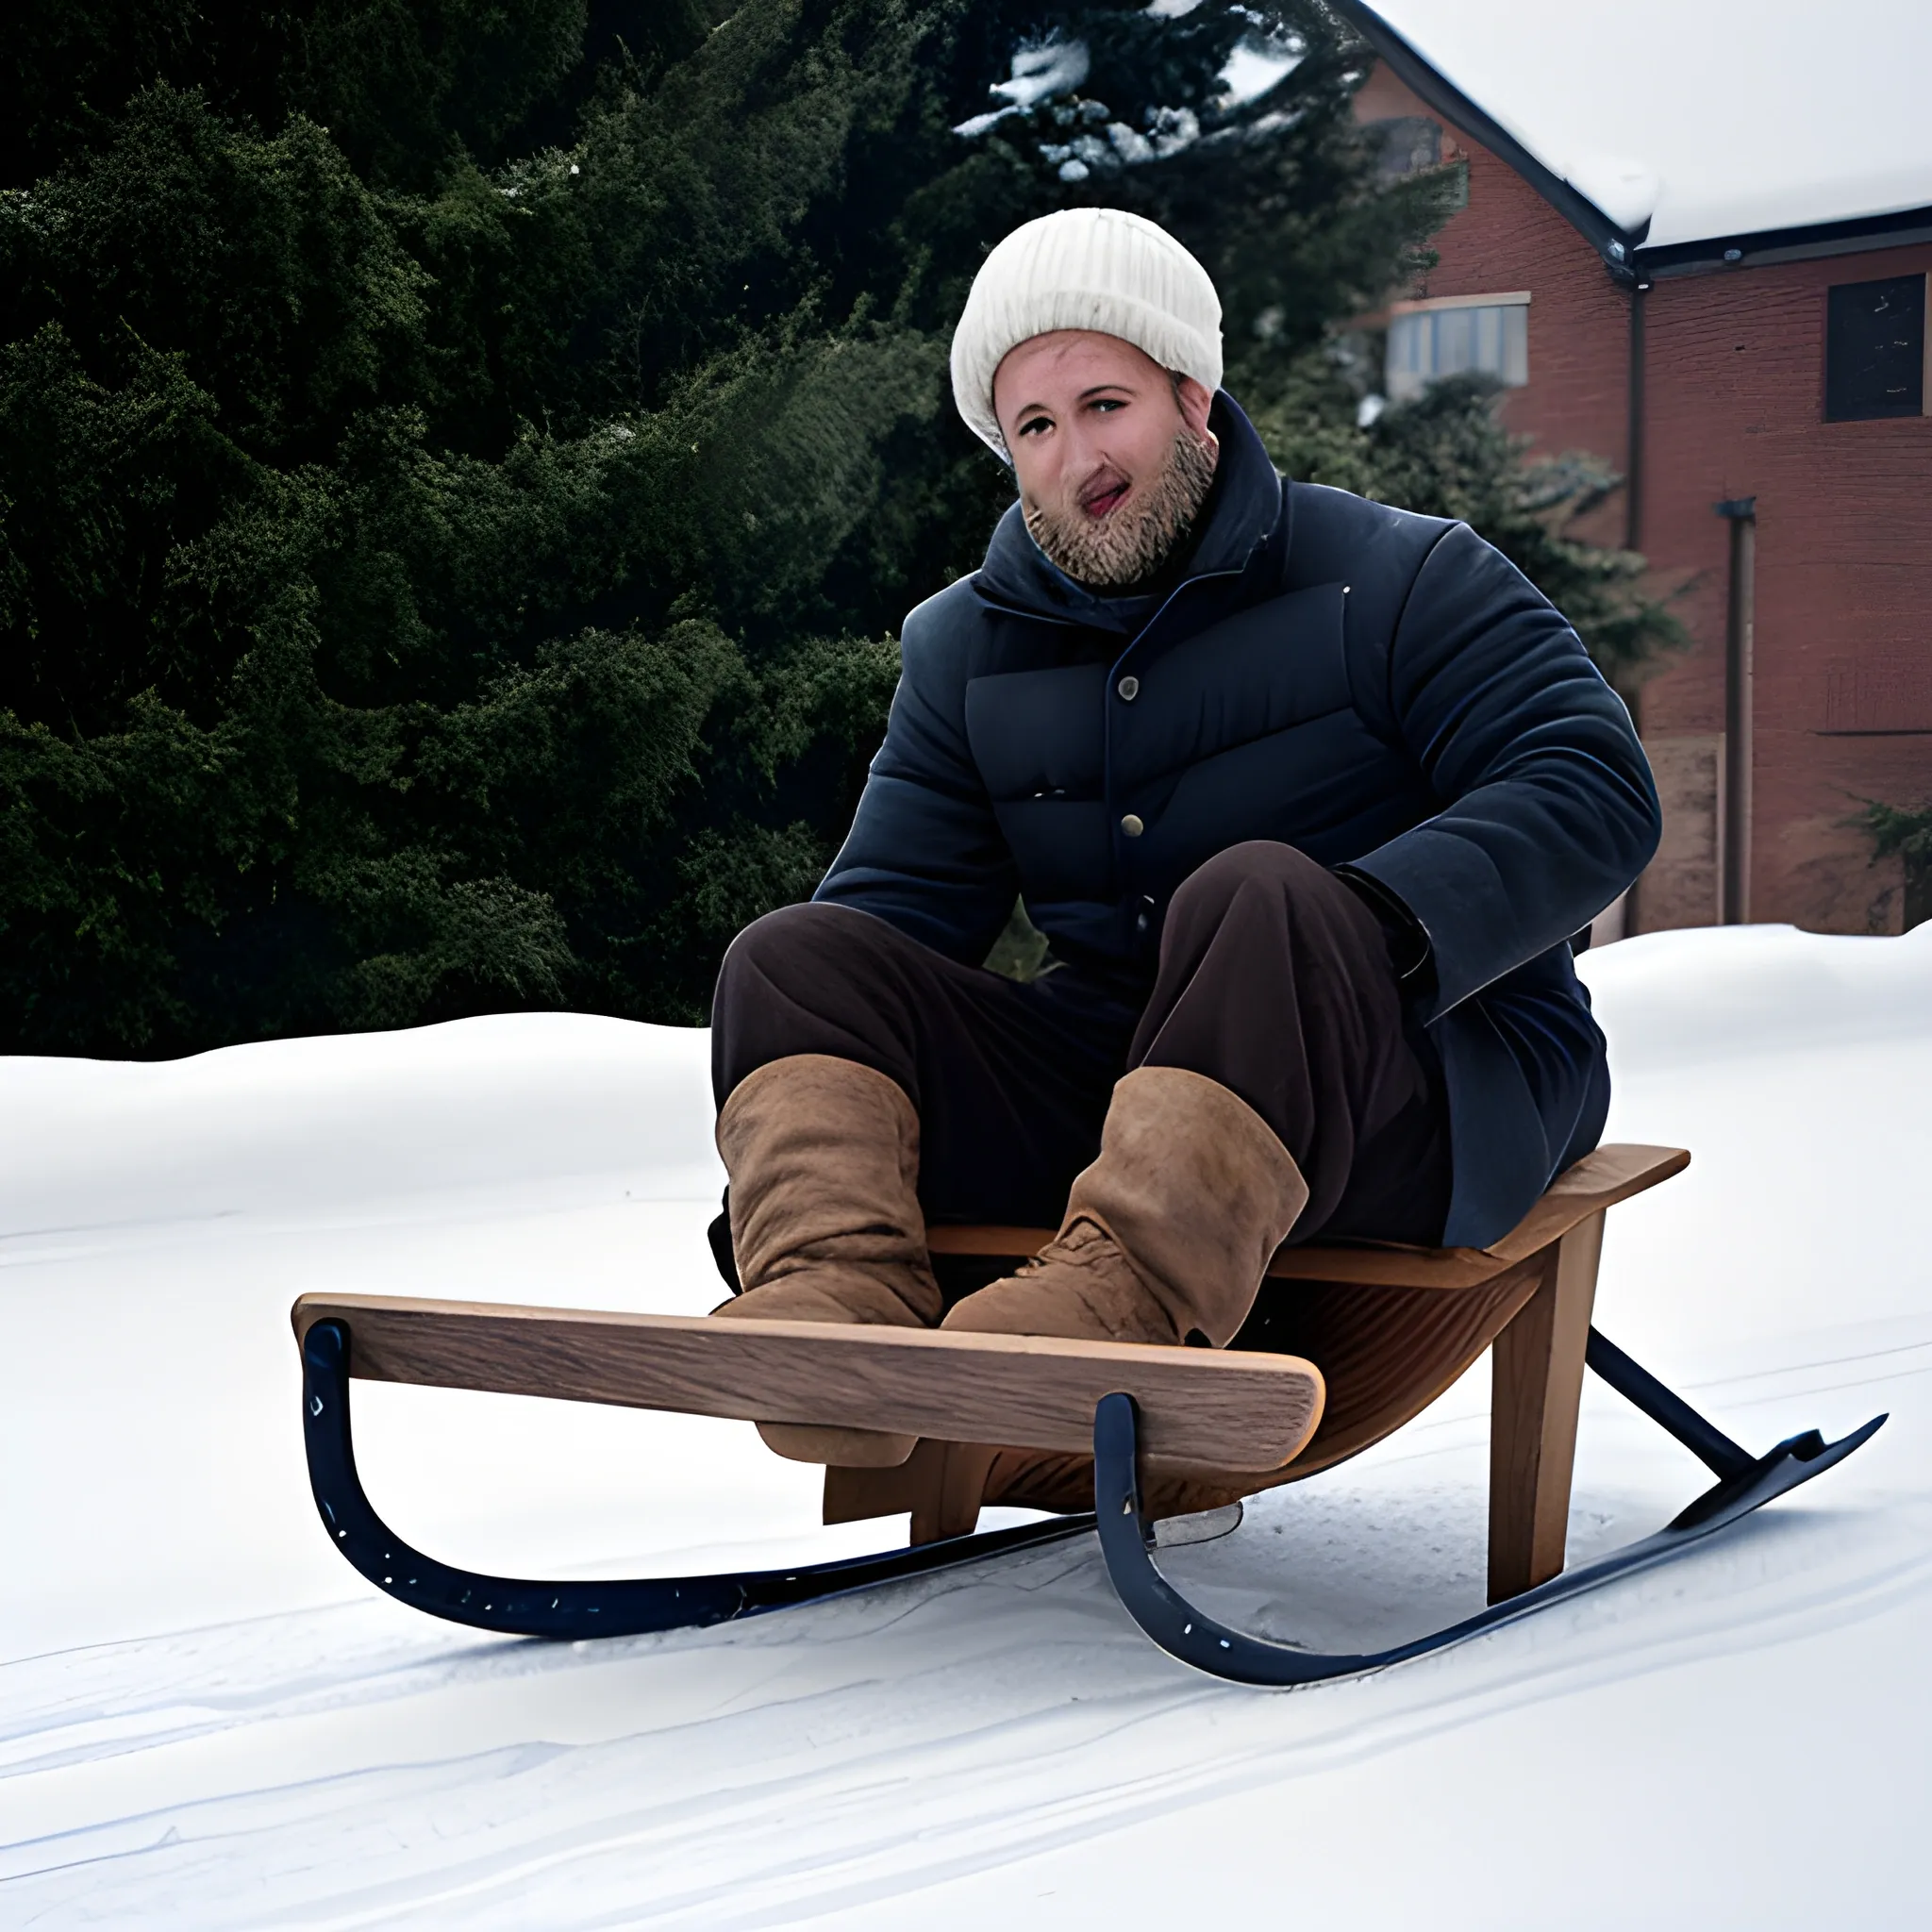  man on a sledge 